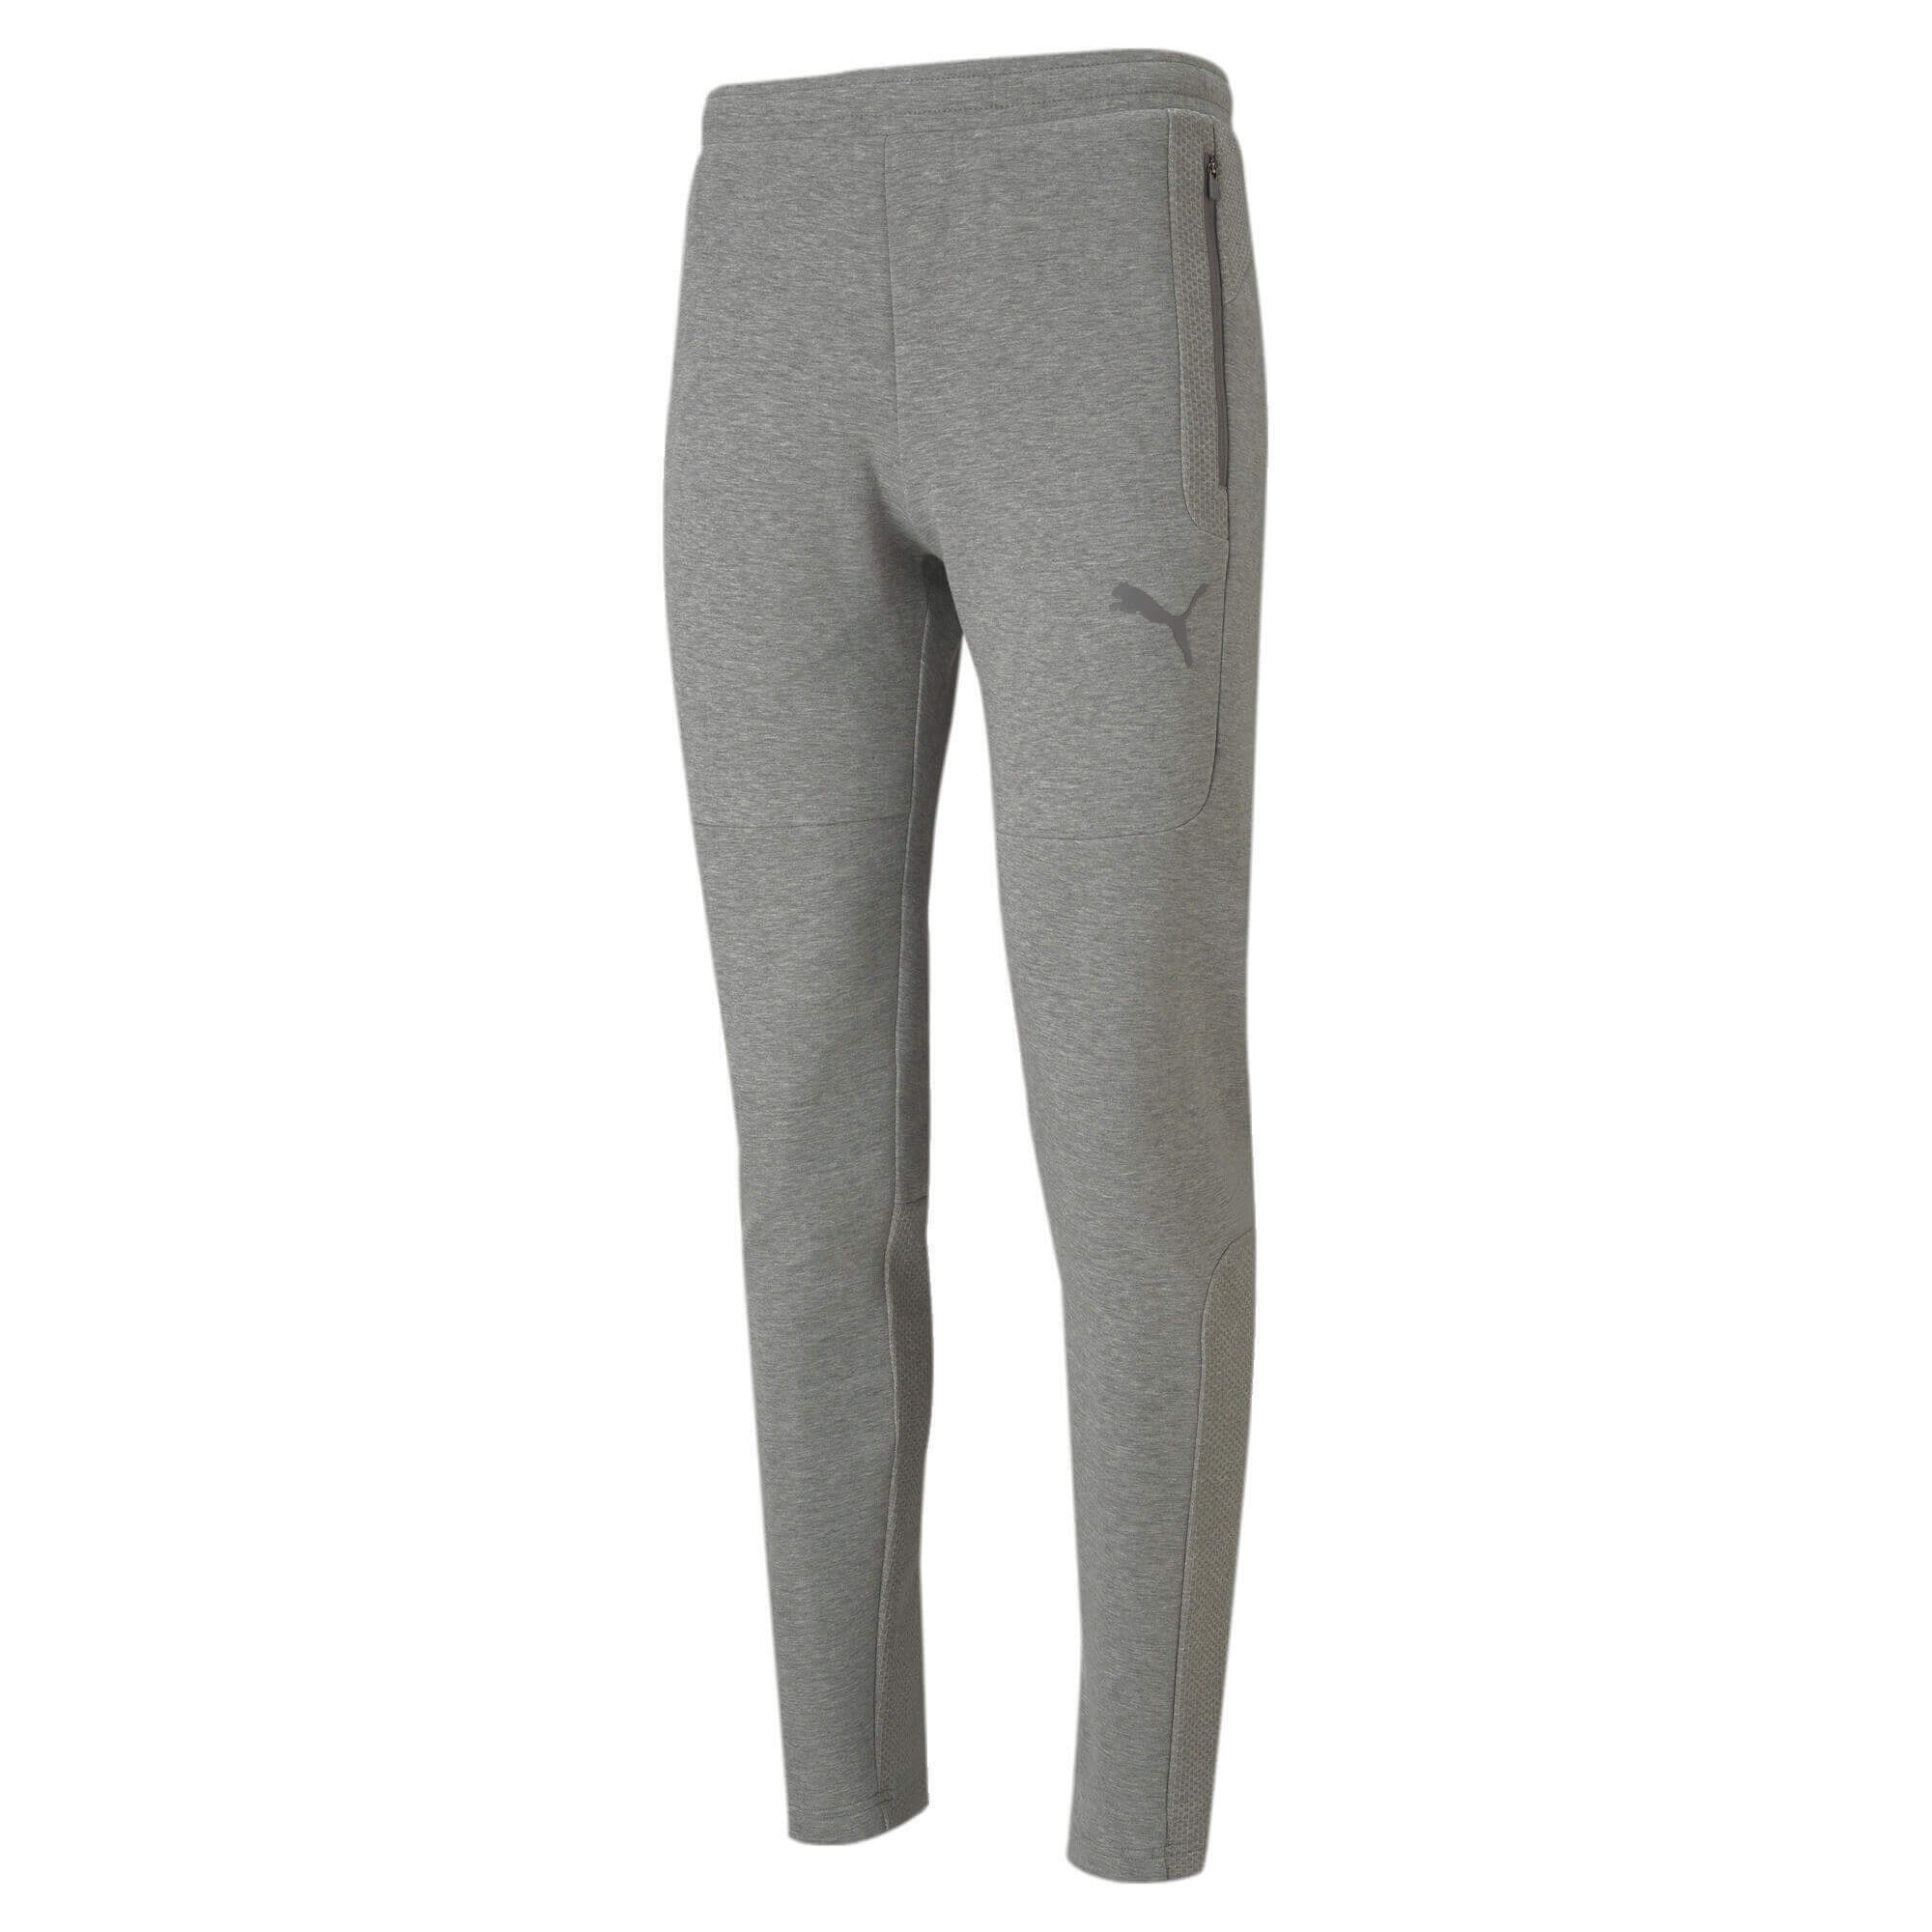 Спортивные брюки Puma Teamcup Casuals, серый